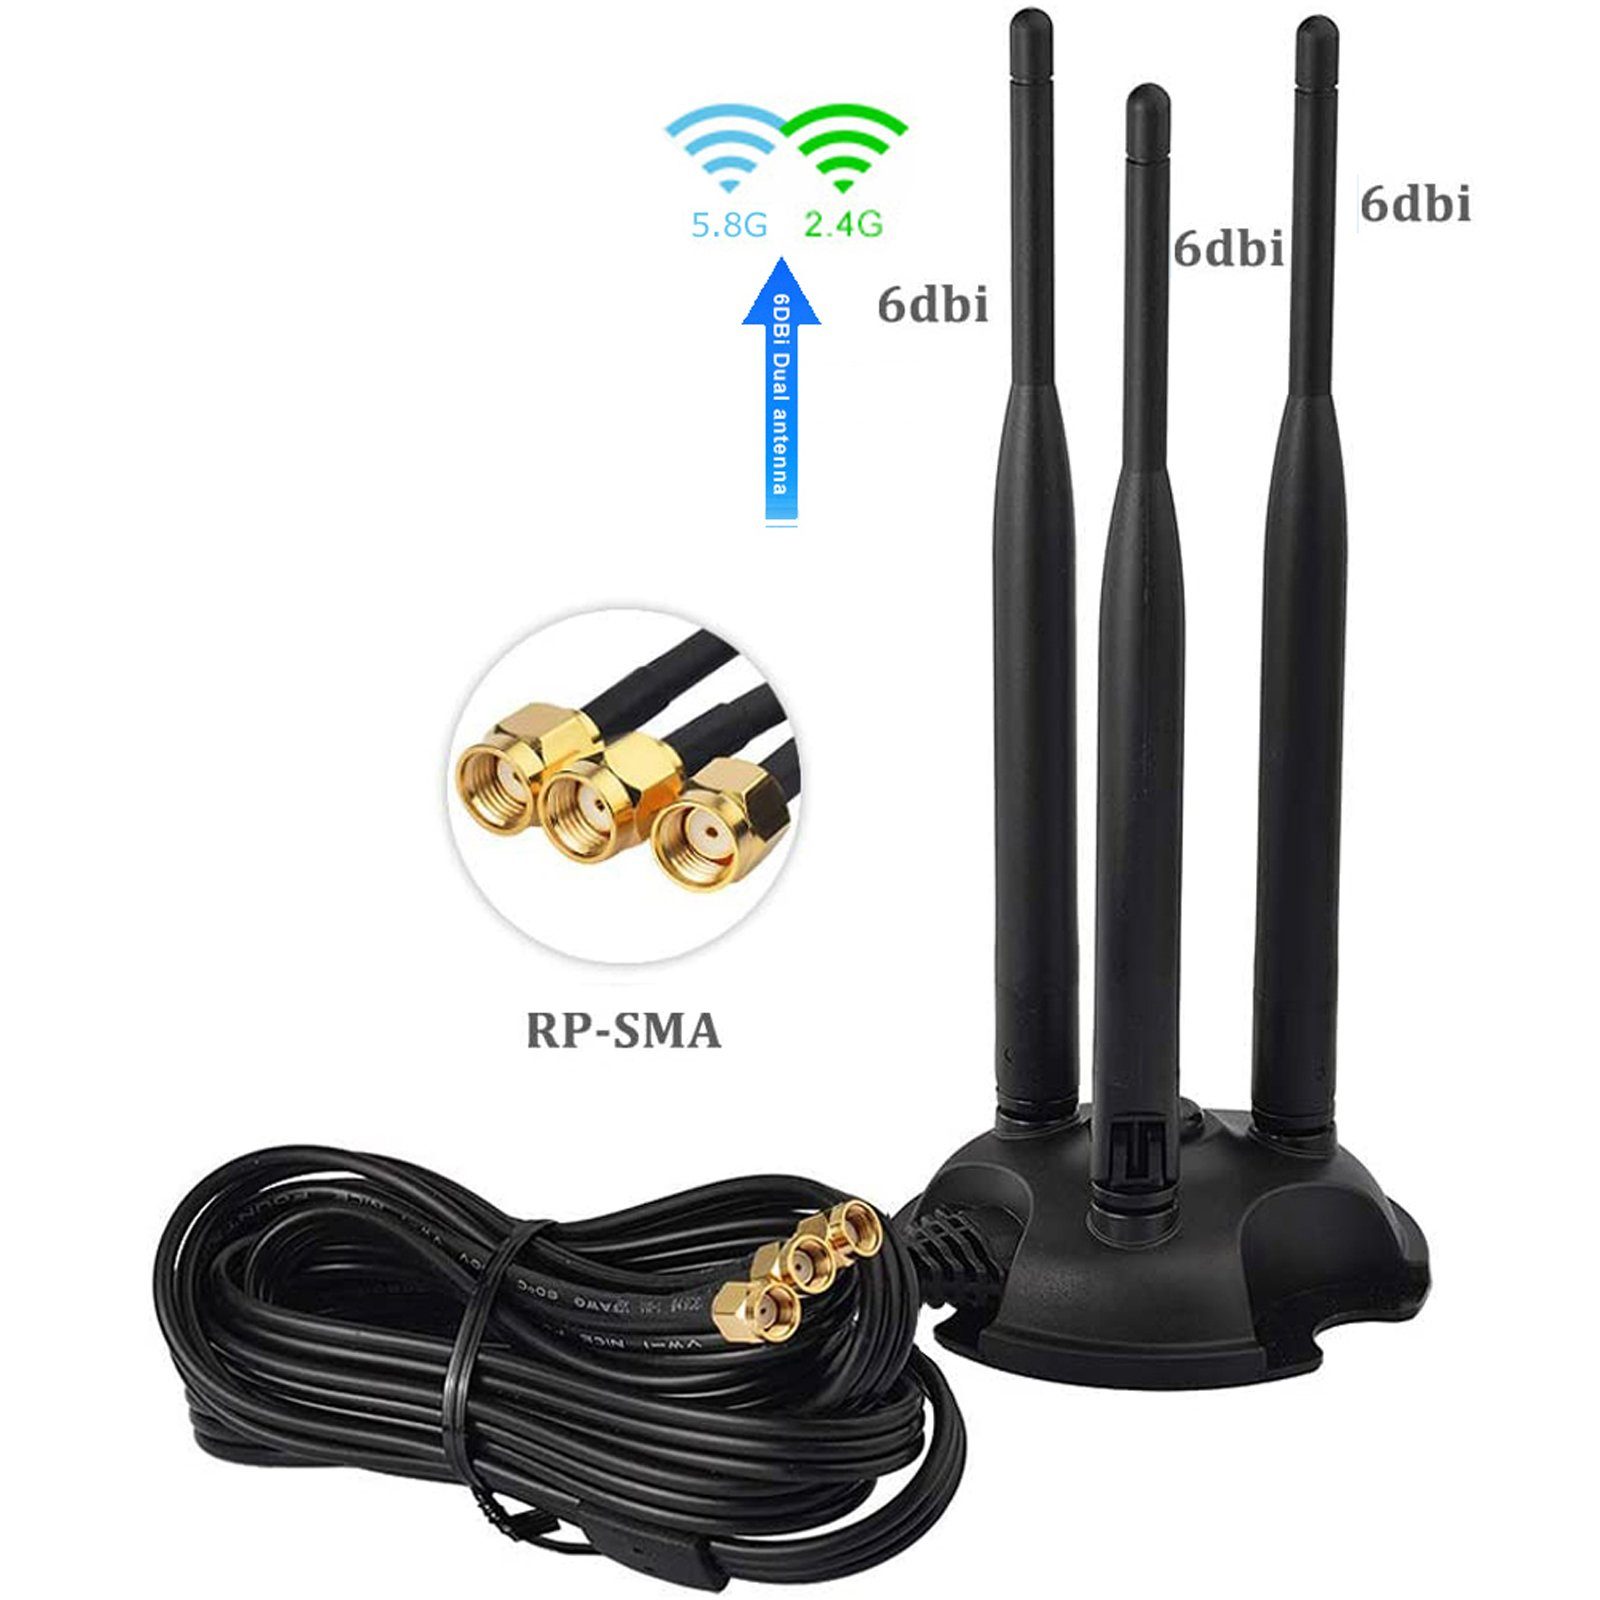 Bolwins L13D 3m 2.4G 5.8G WiFi Antenne 3x 6dBi RP-SMA Adapter Kabel Standfuss WLAN-Antenne | WLAN-Antennen